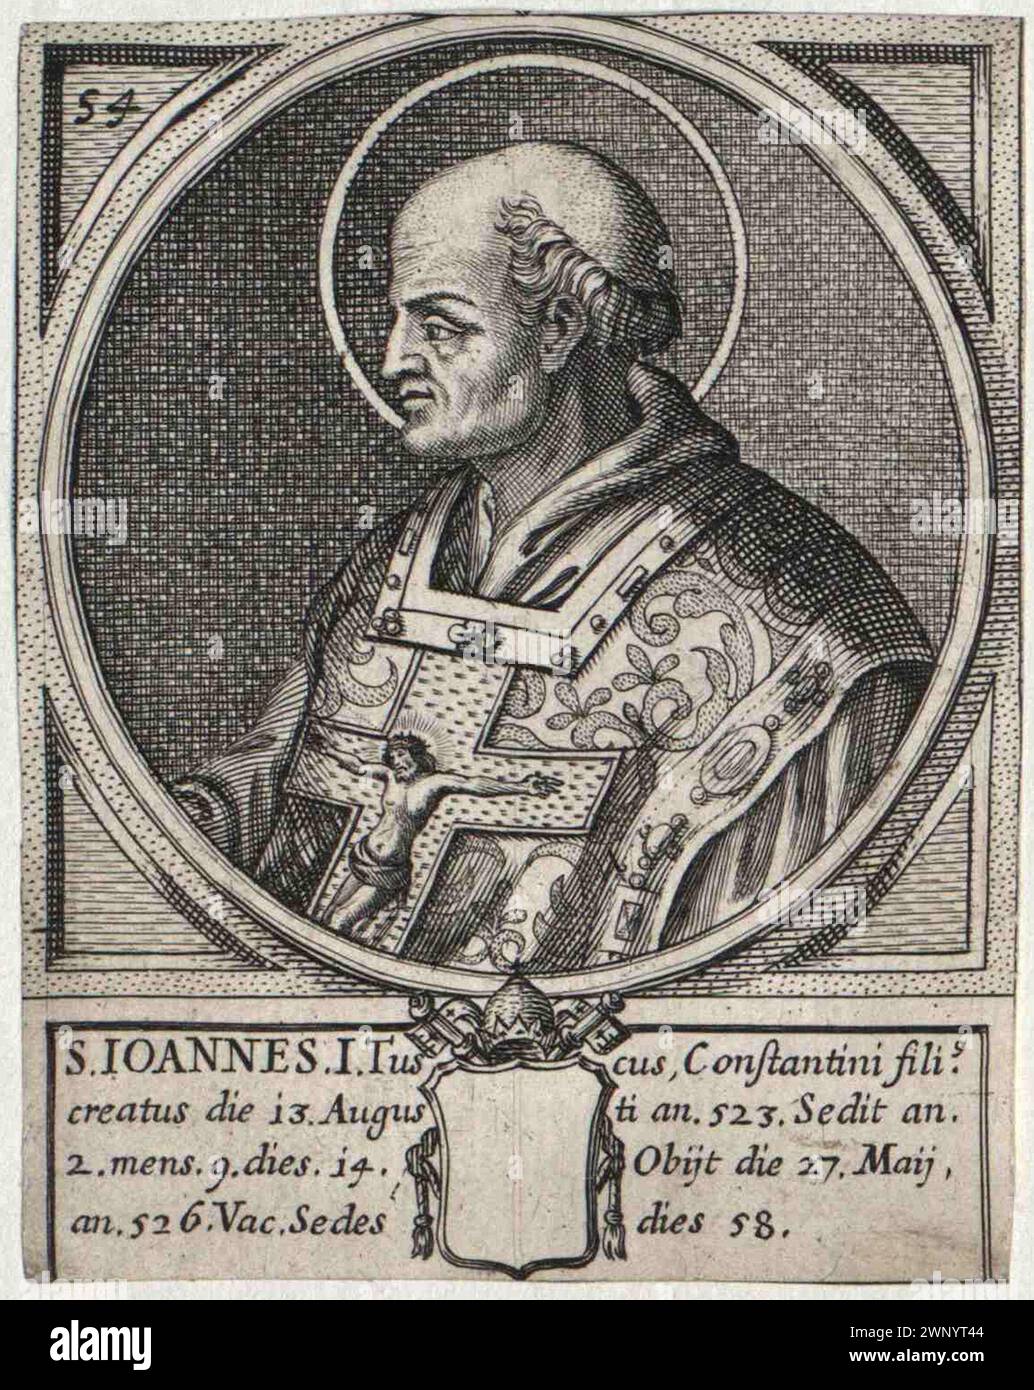 Gravure du XVIe siècle du pape Jean Ier (également connu sous le nom de Johannes Ier ou Ioannes Ier) qui fut pontife de AD523 à AD526. Il était le 53e pape. Banque D'Images